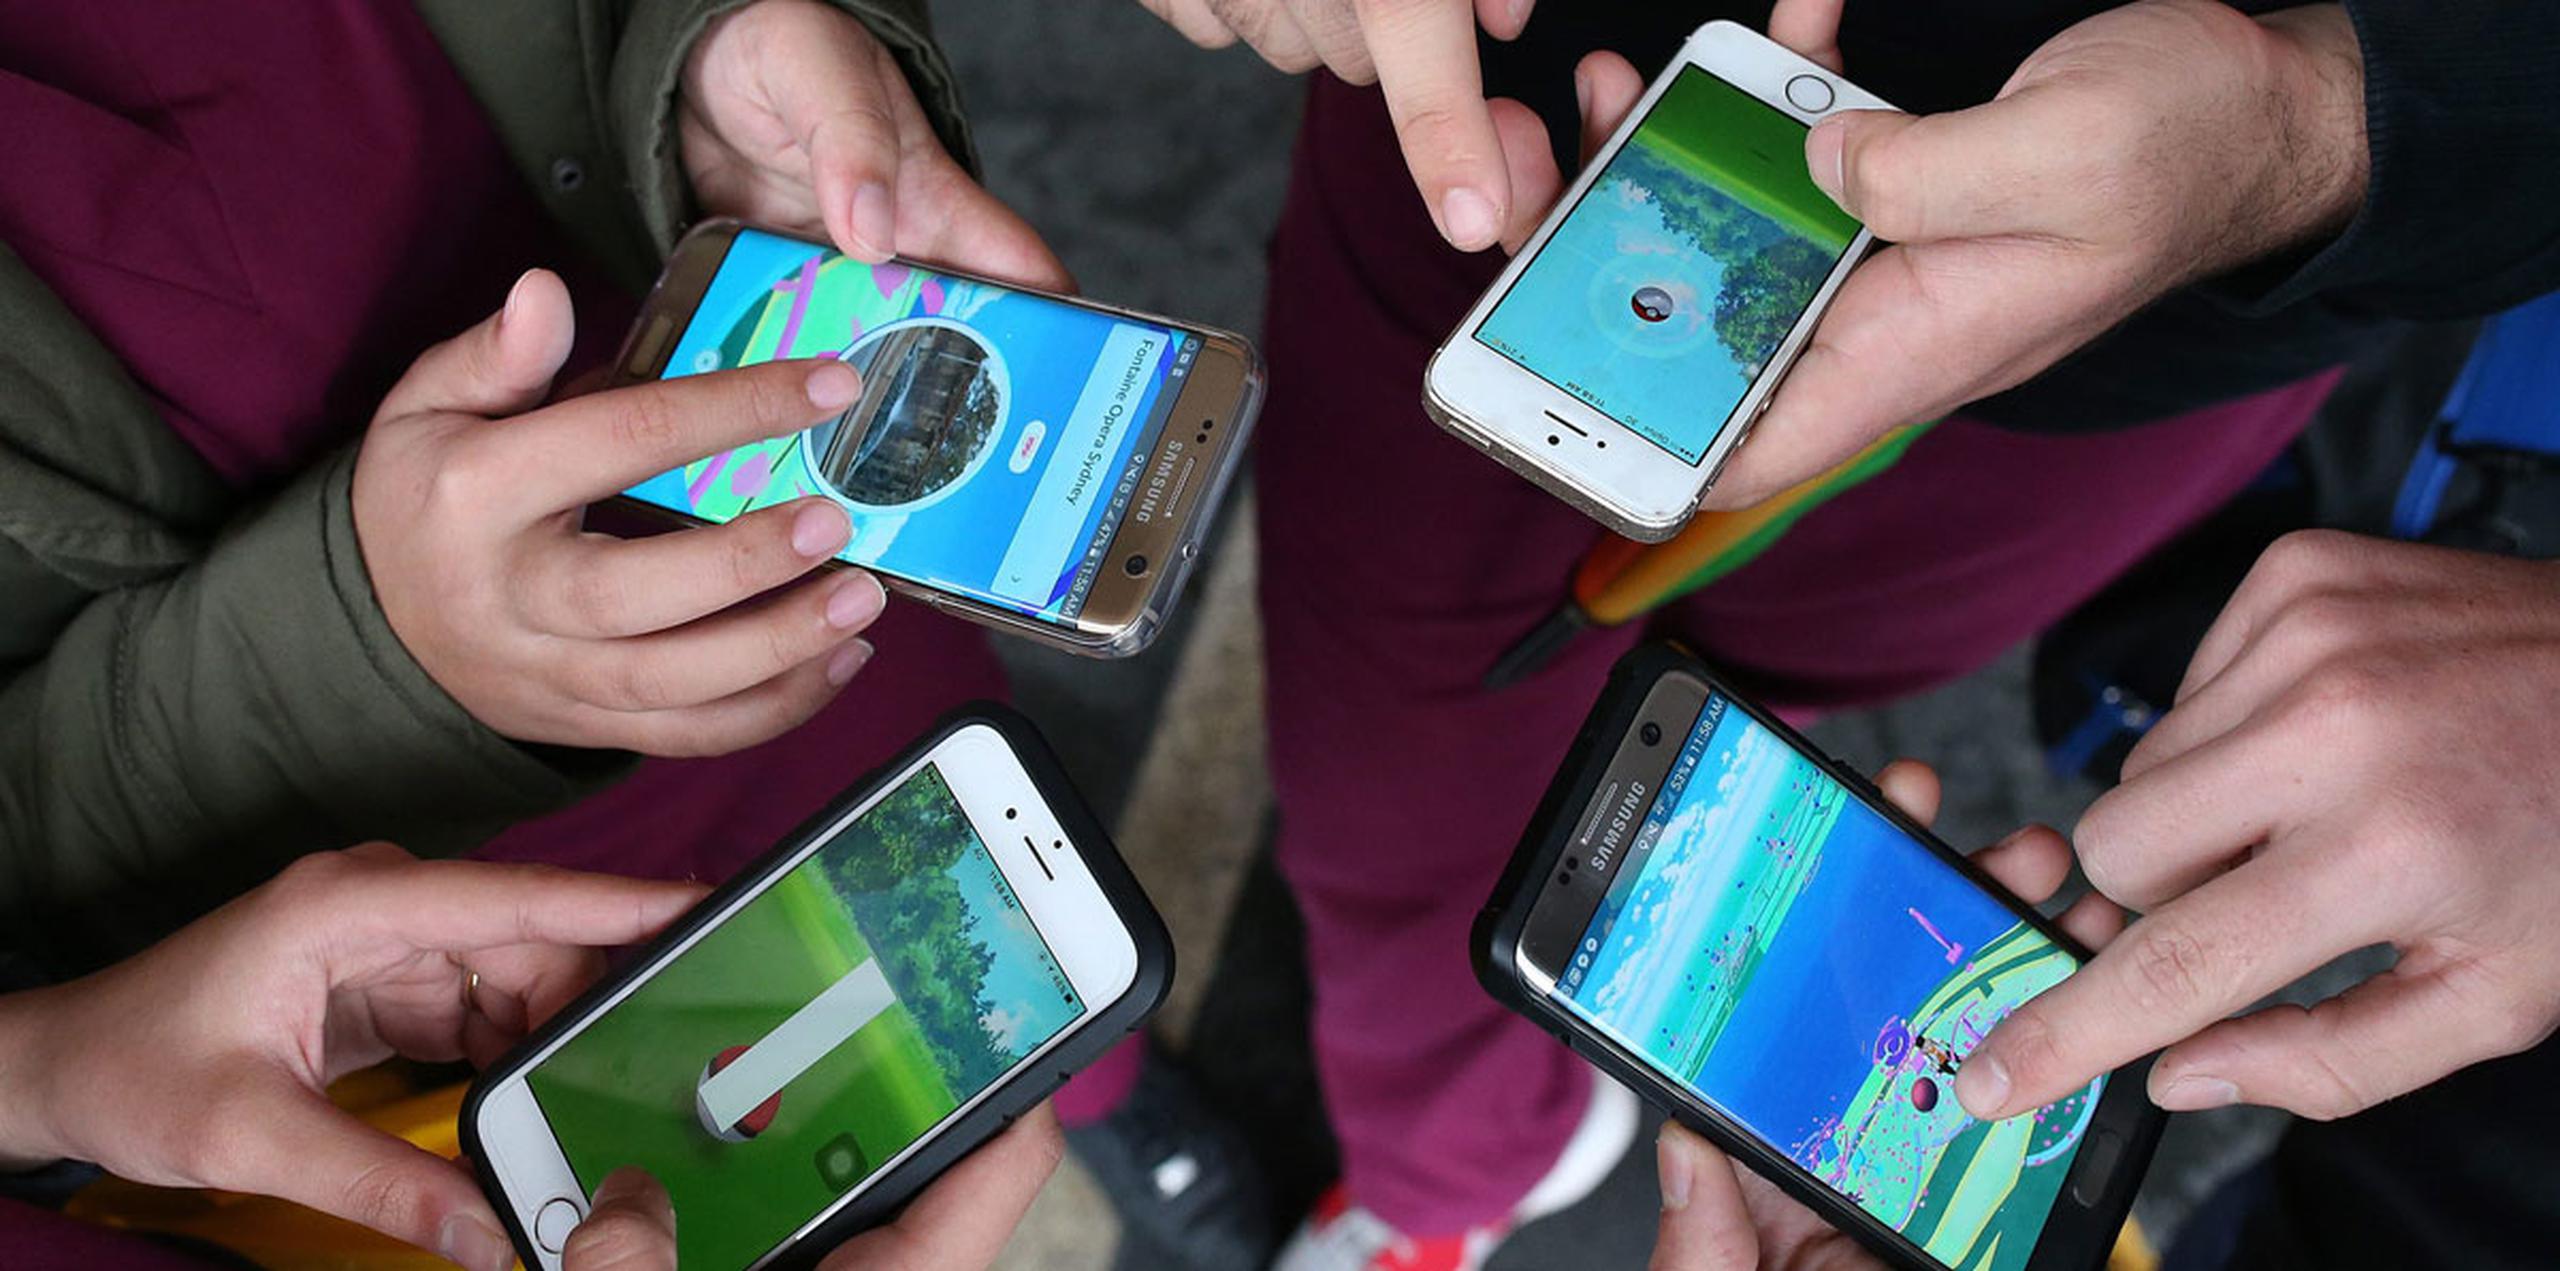 "Pokémon Go", que emplea Google Maps y smartphones para situar a las criaturas de Pokémon en el mundo real, no se ha lanzado oficialmente en Indonesia, donde goza ya de una gran popularidad. (AP)